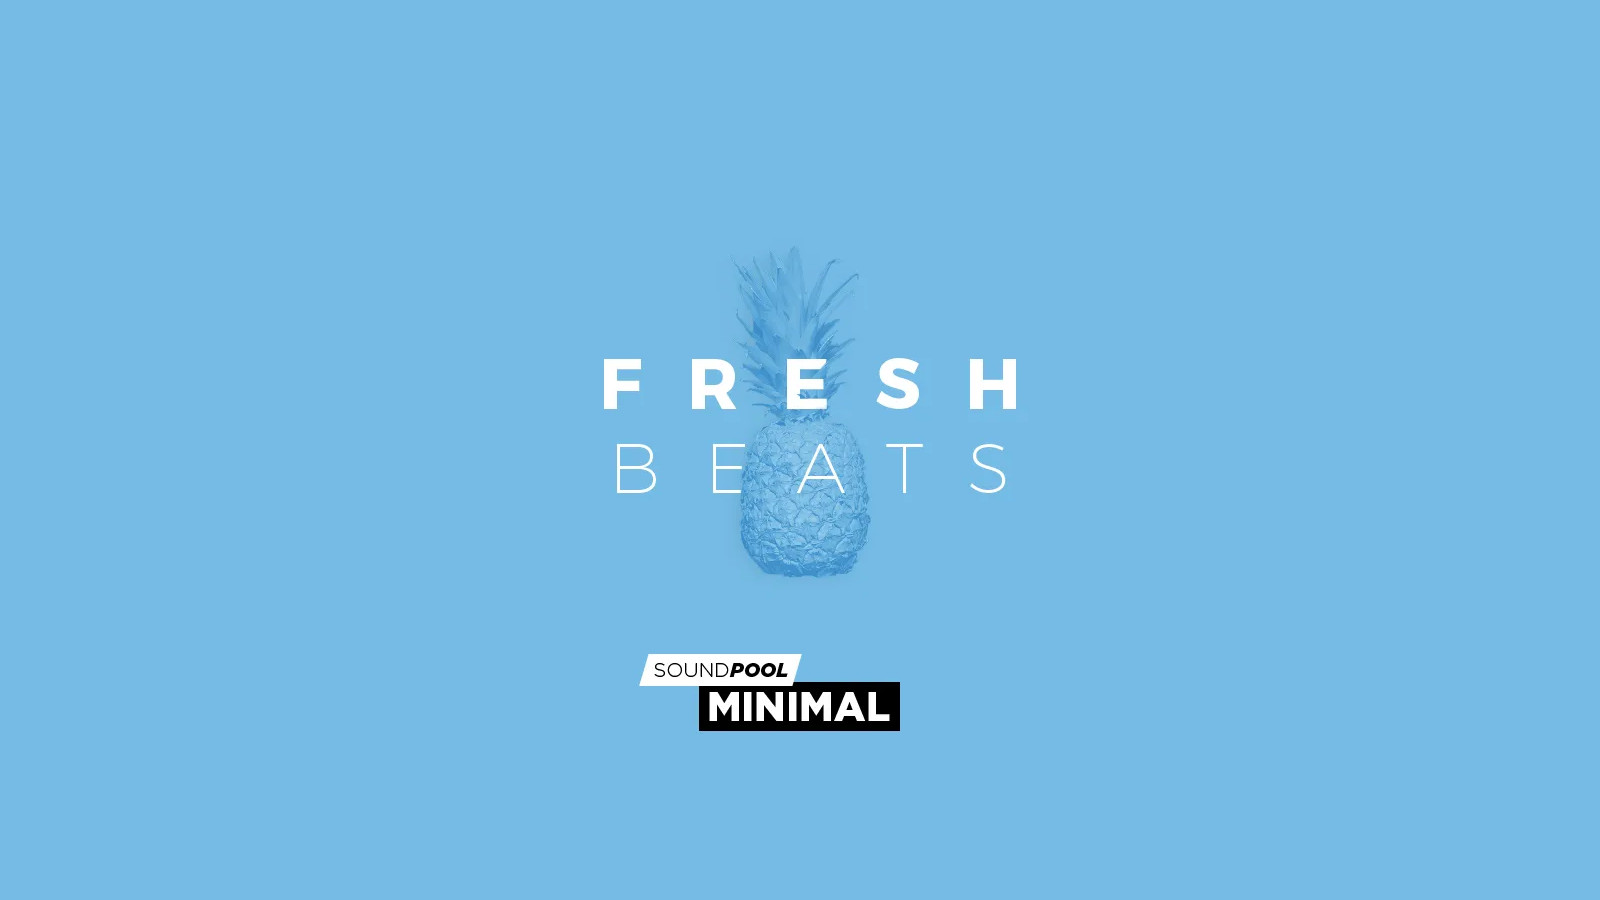 MAGIX Soundpool Fresh Beats ProducerPlanet CD Key $5.65